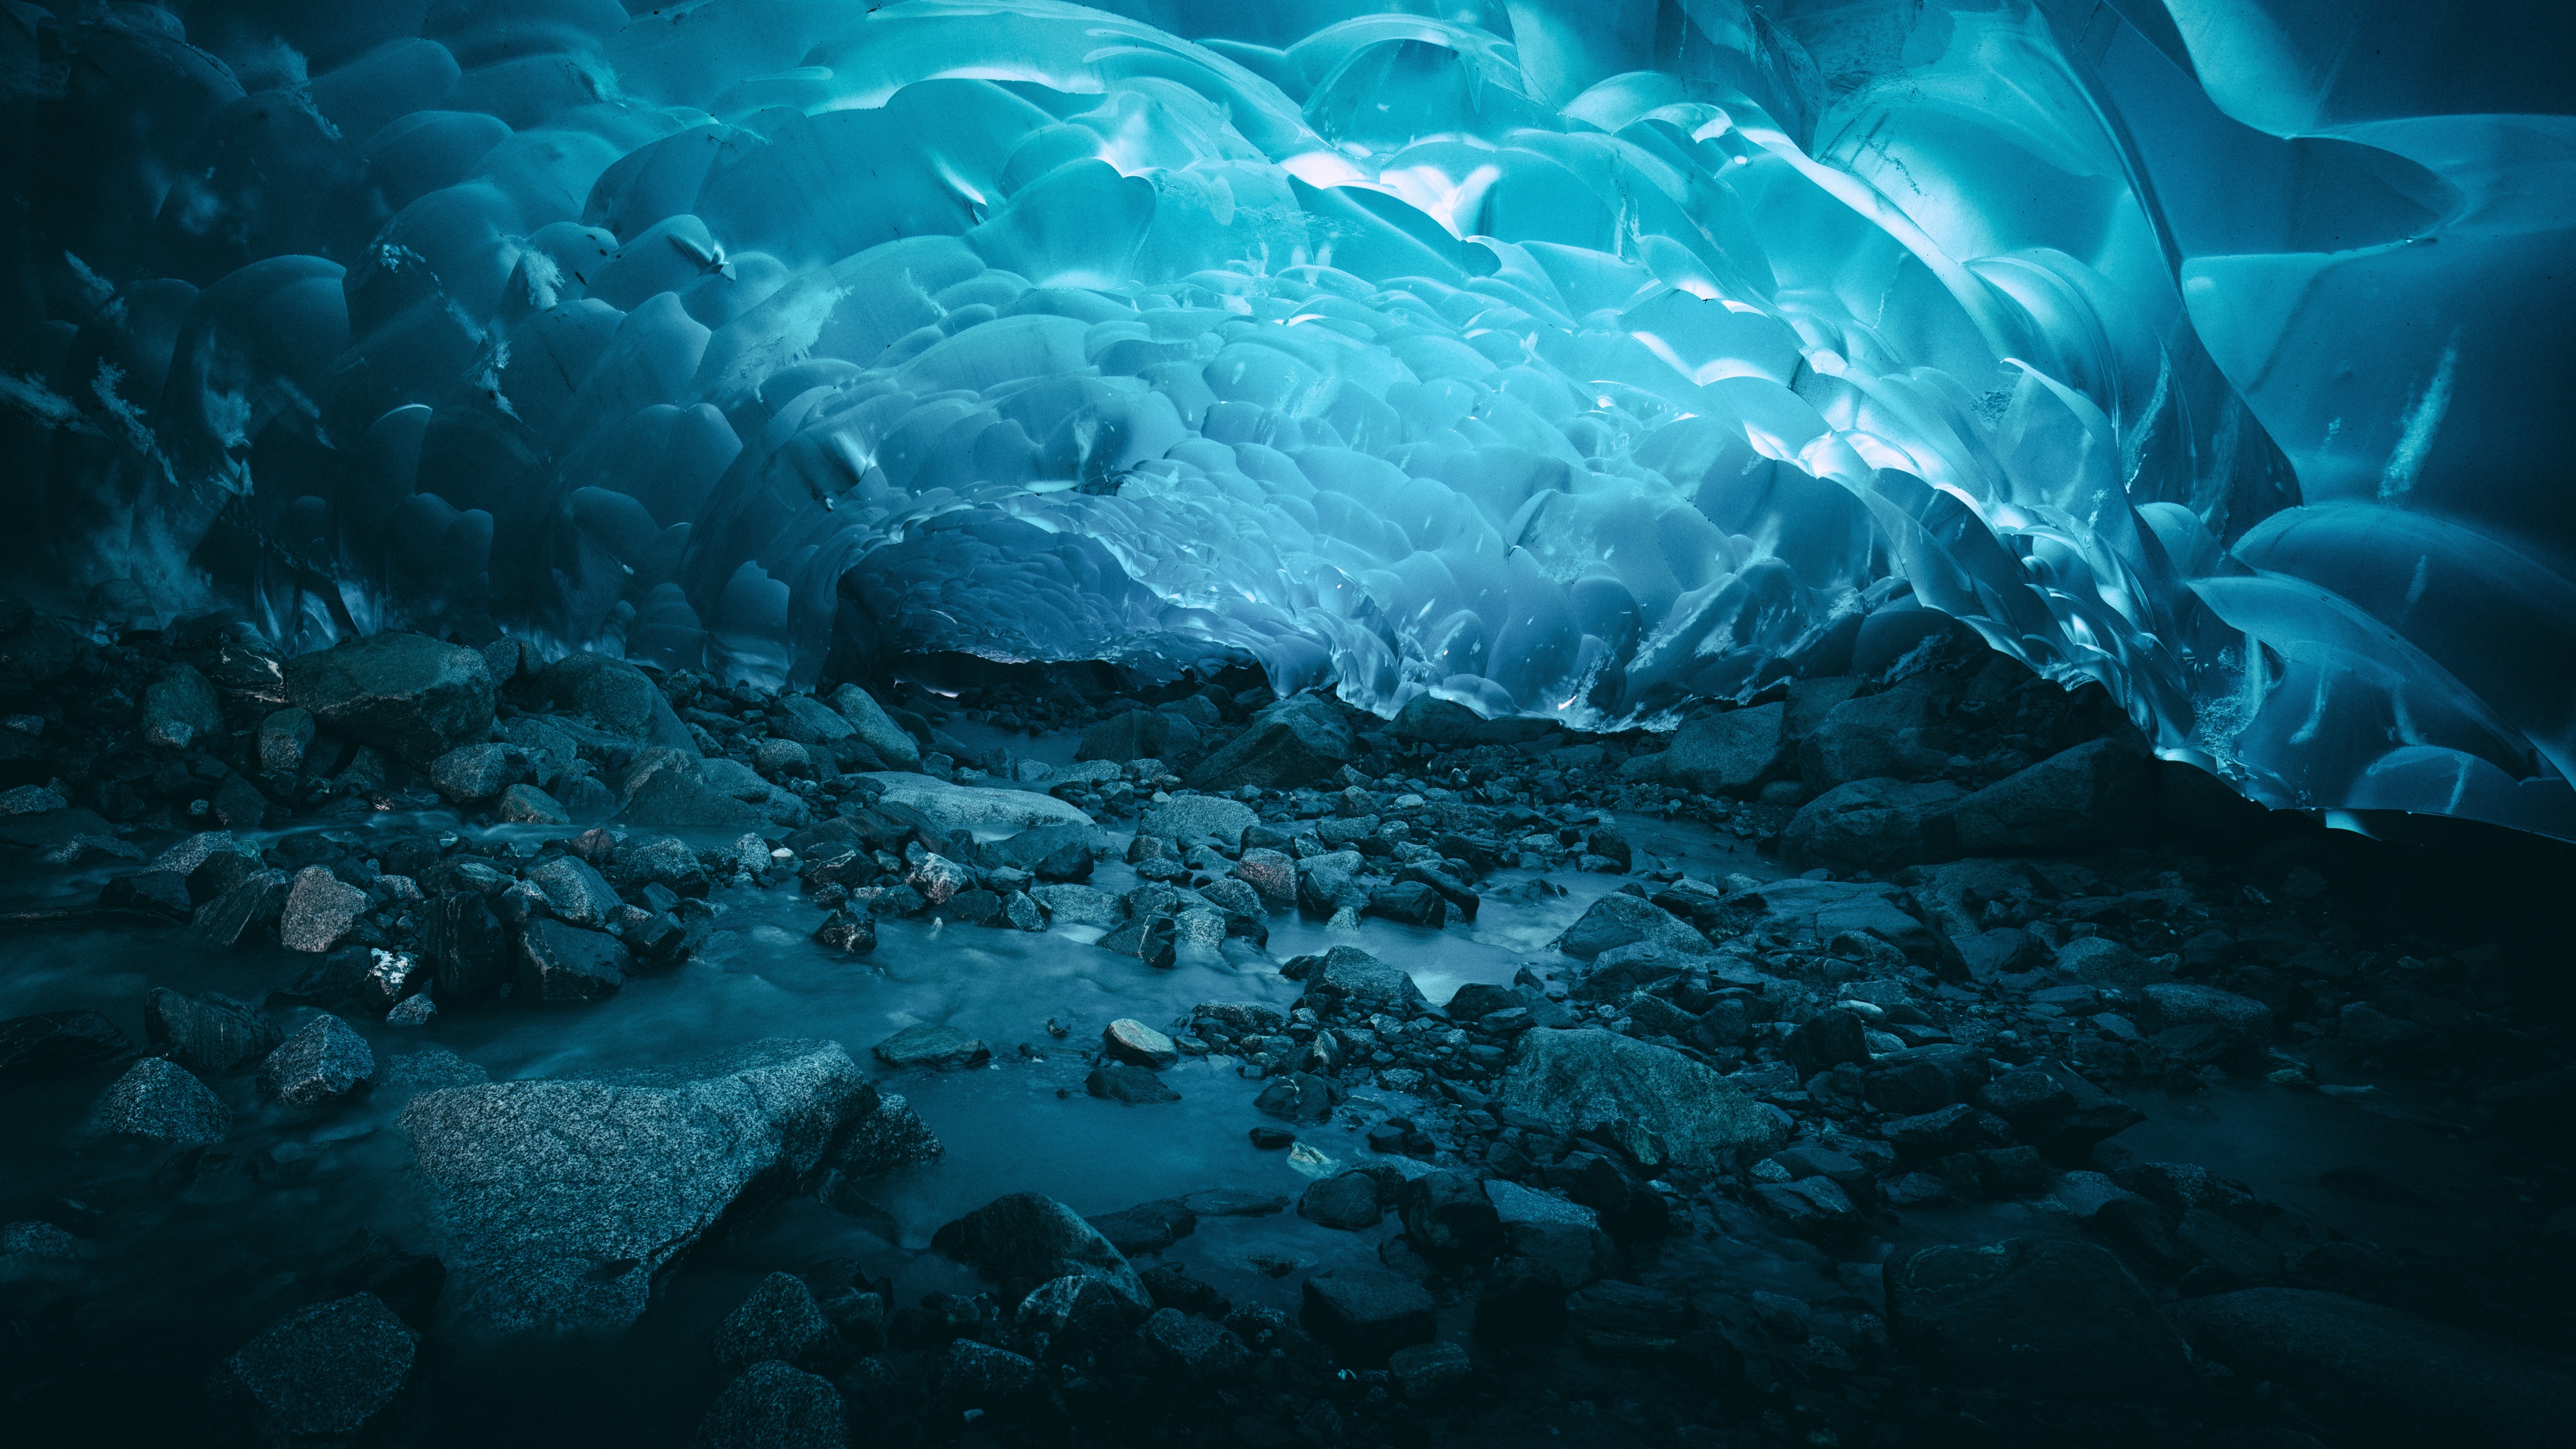 4000 Free Glacier  Nature Images  Pixabay